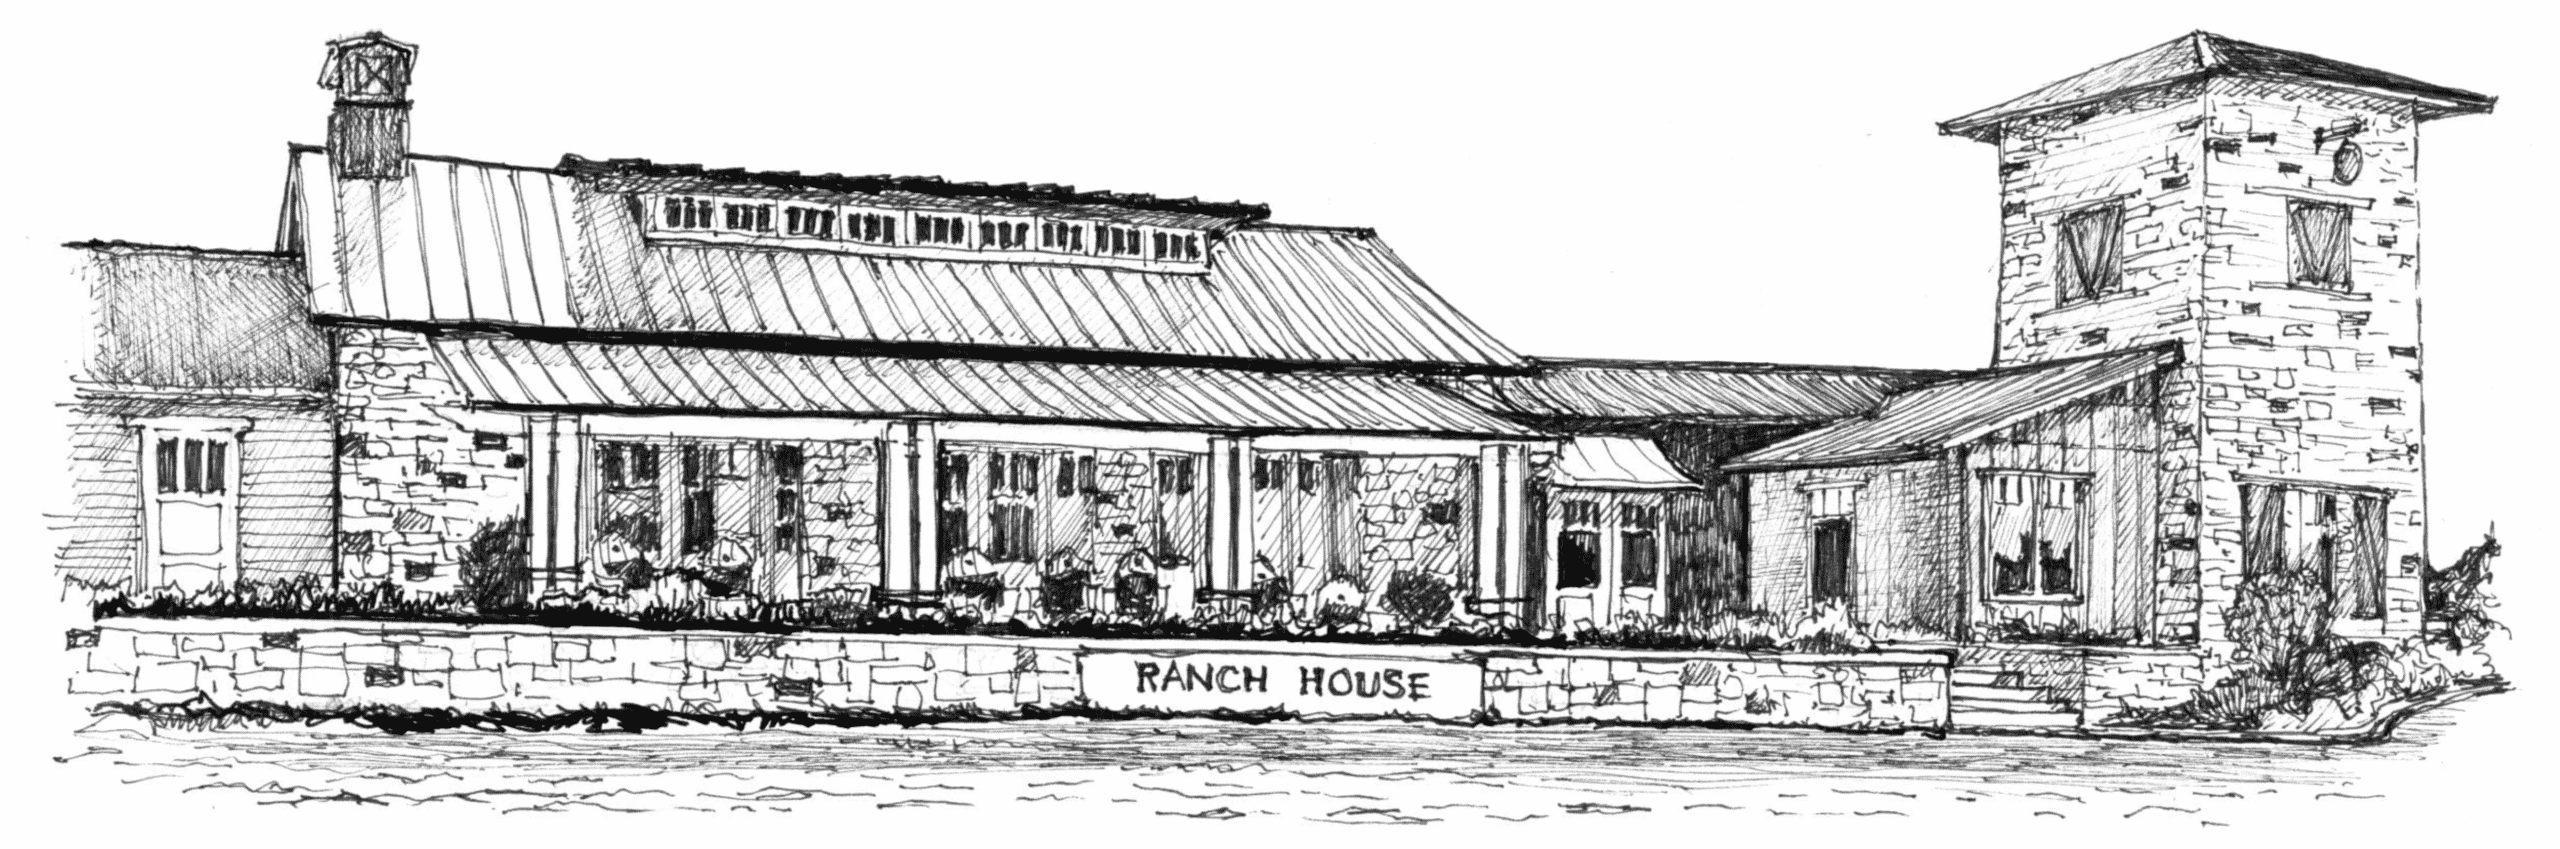 Santa Rita Ranch Illustration of Ranch House